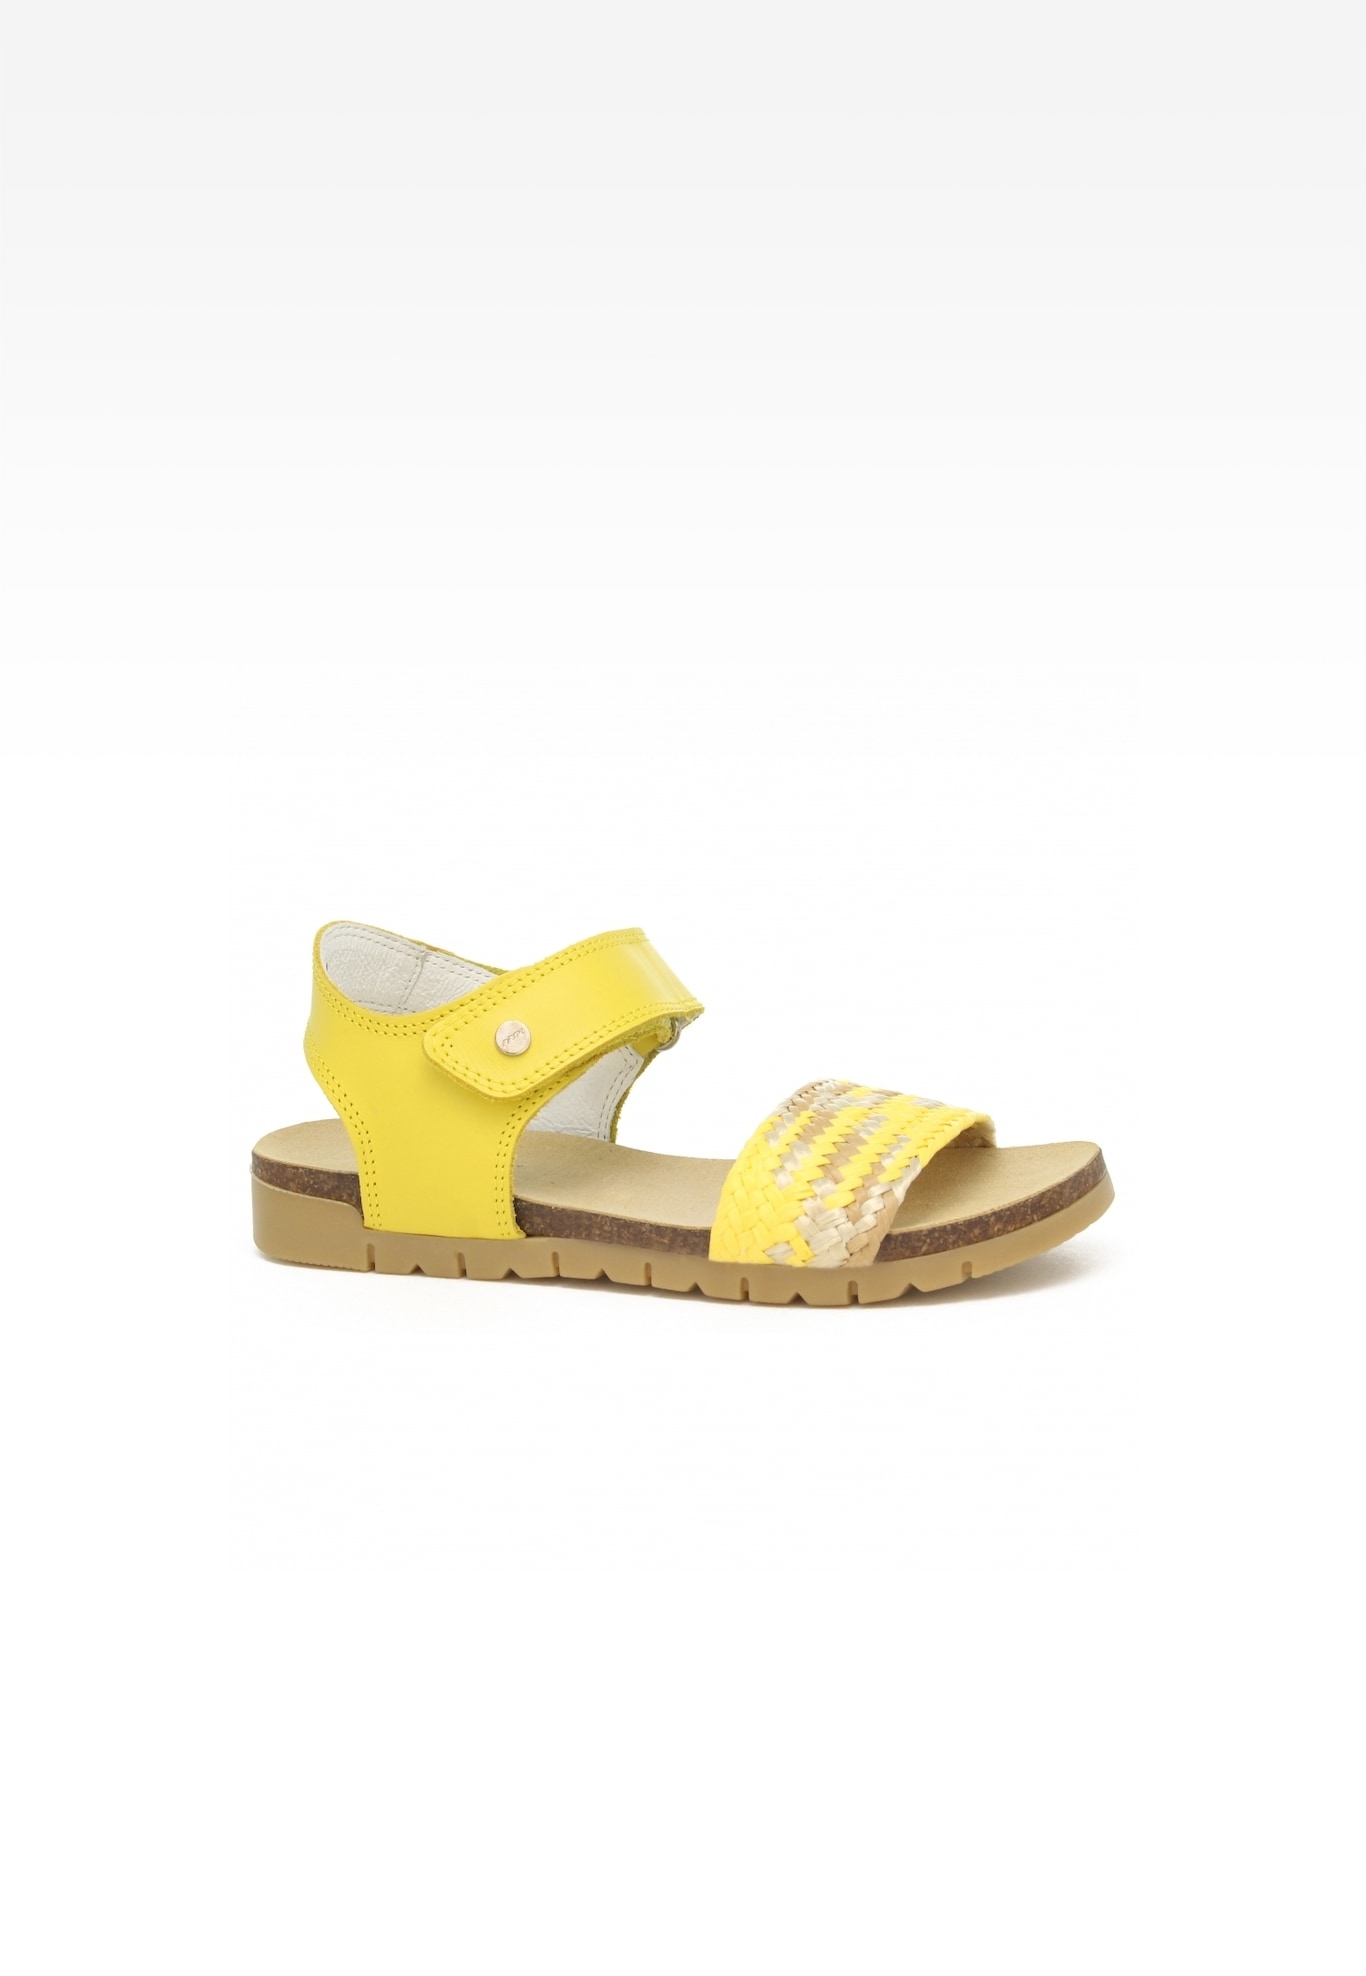 Sandały Wojas x Bartek 8520088, dla dziewcząt, żółty